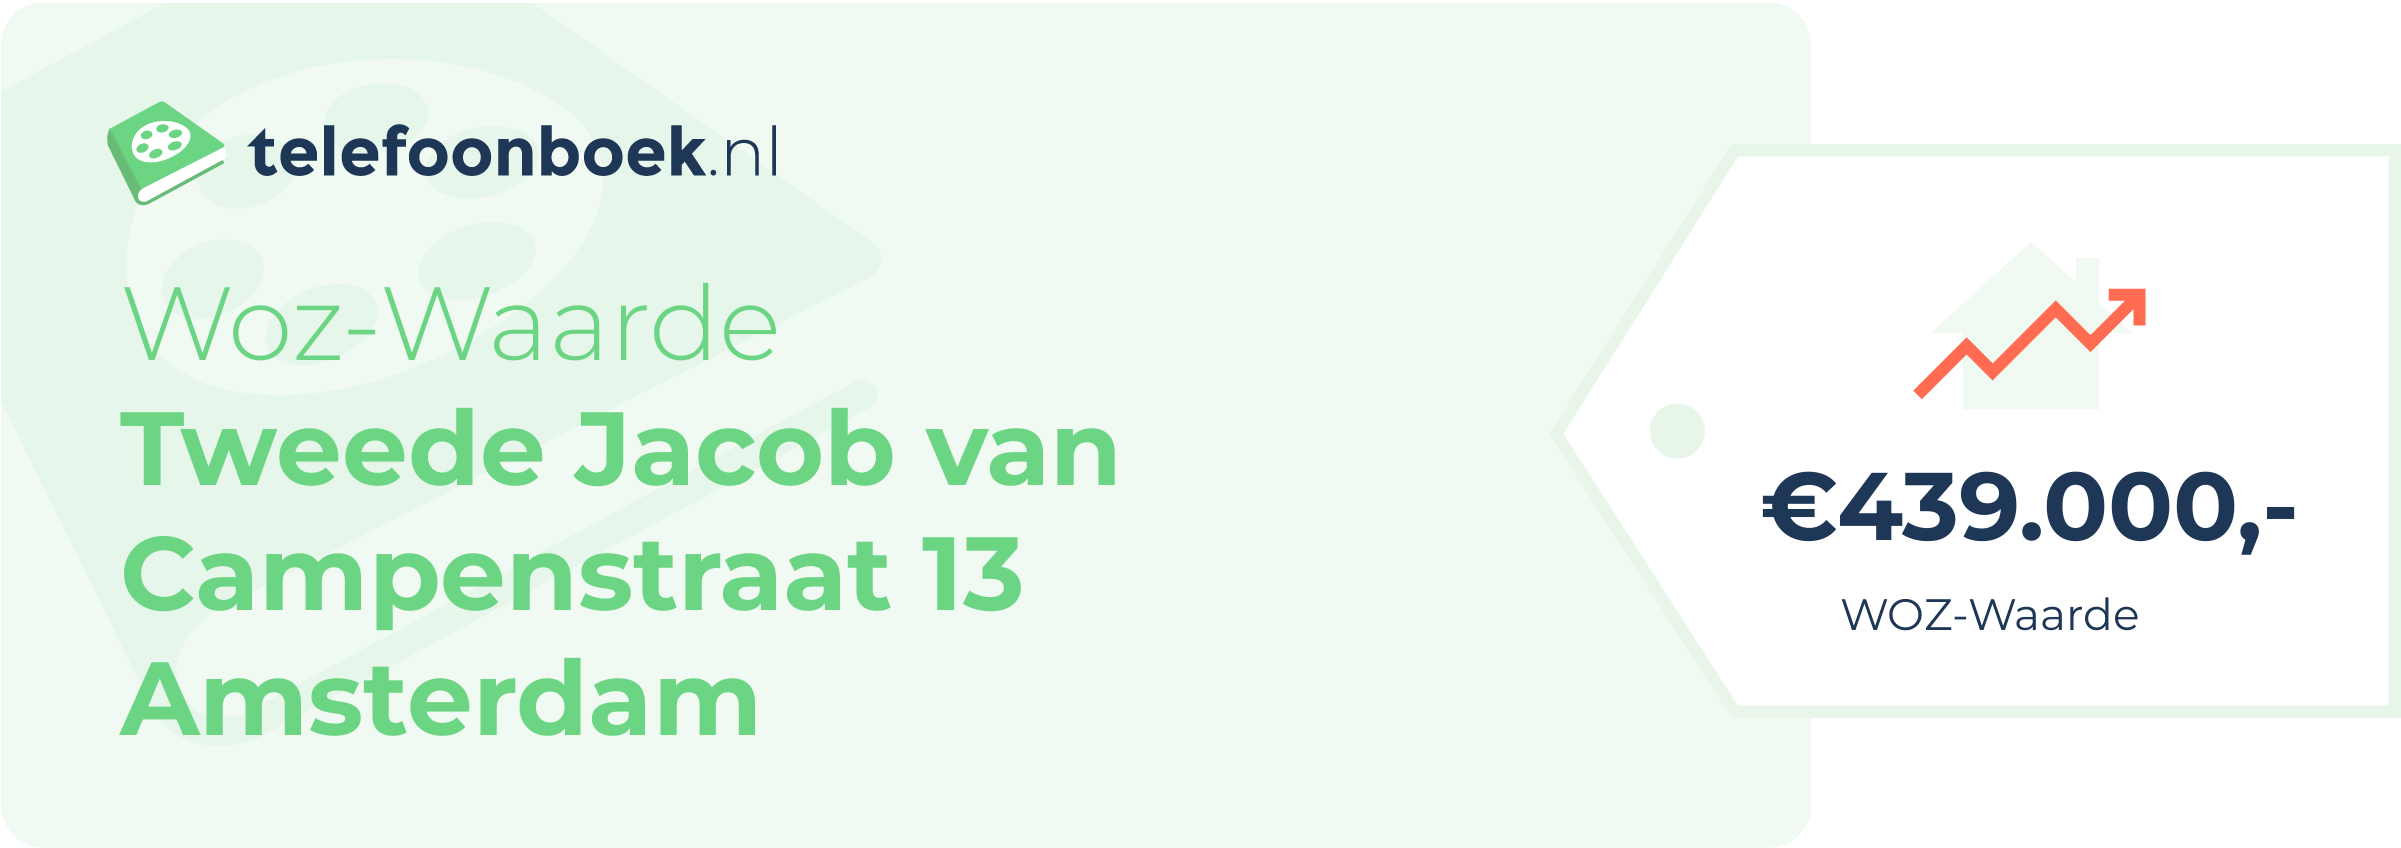 WOZ-waarde Tweede Jacob Van Campenstraat 13 Amsterdam